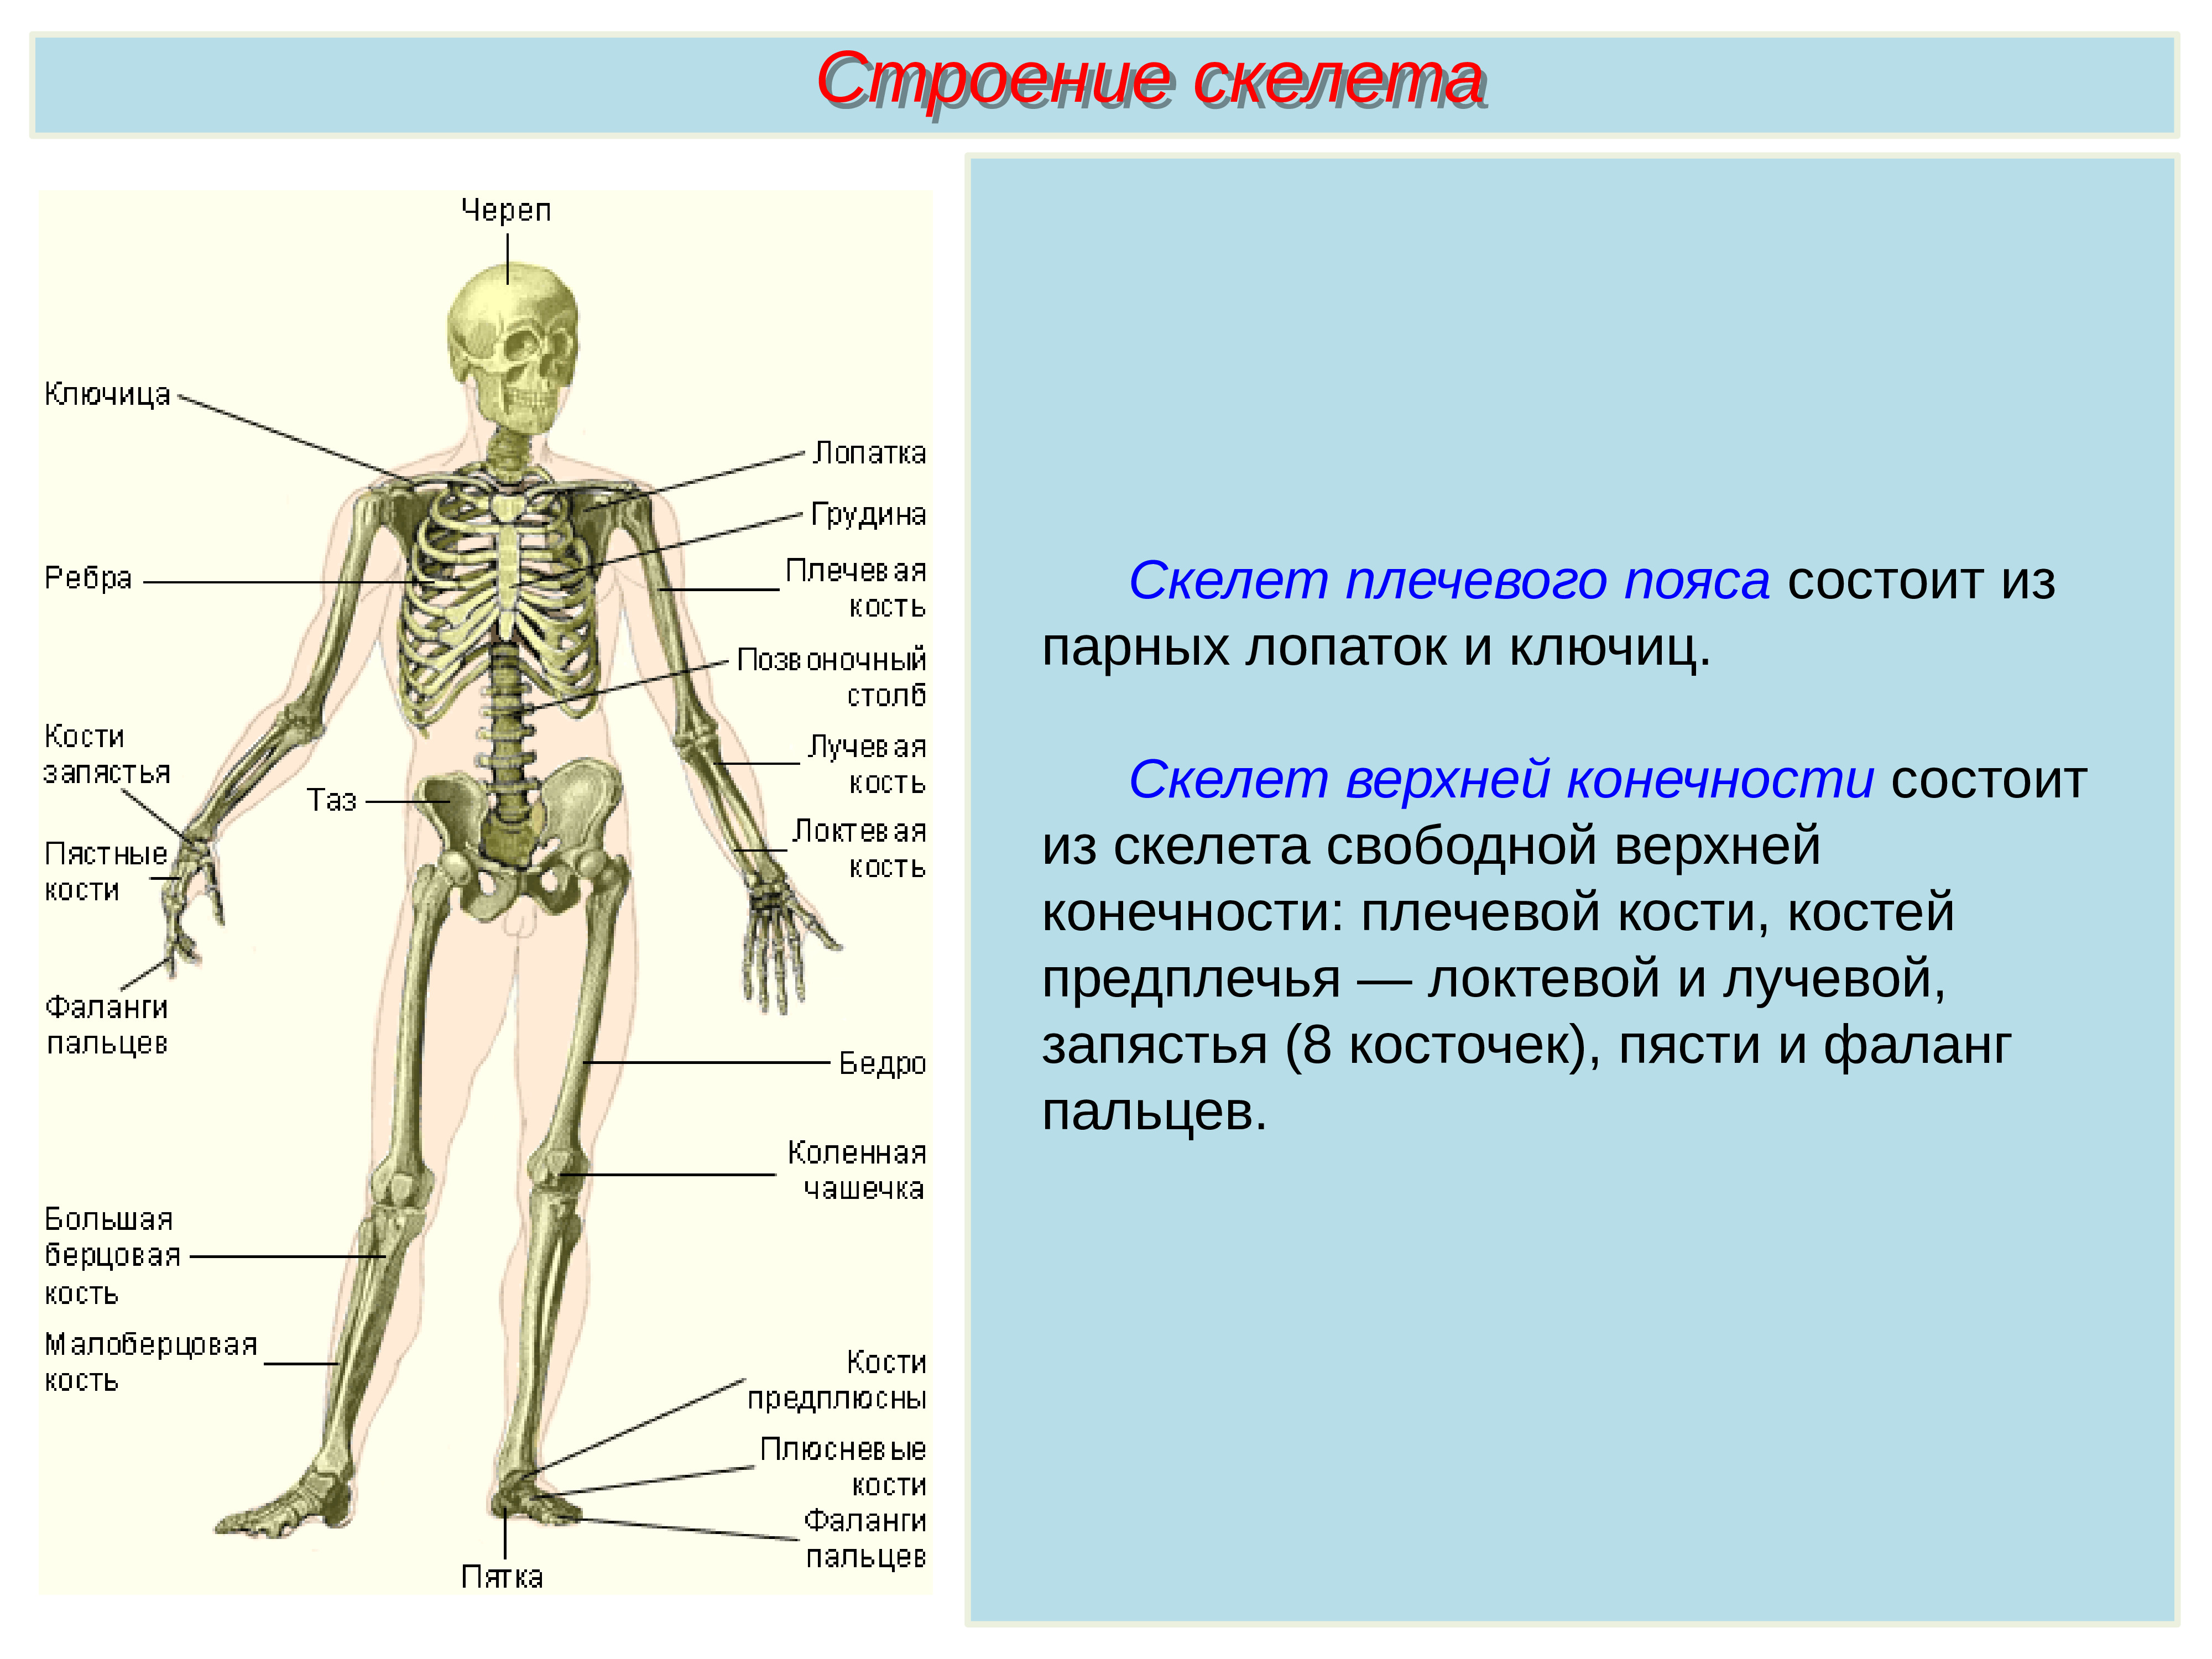 Биология 8 класс скелет строение состав и соединение костей